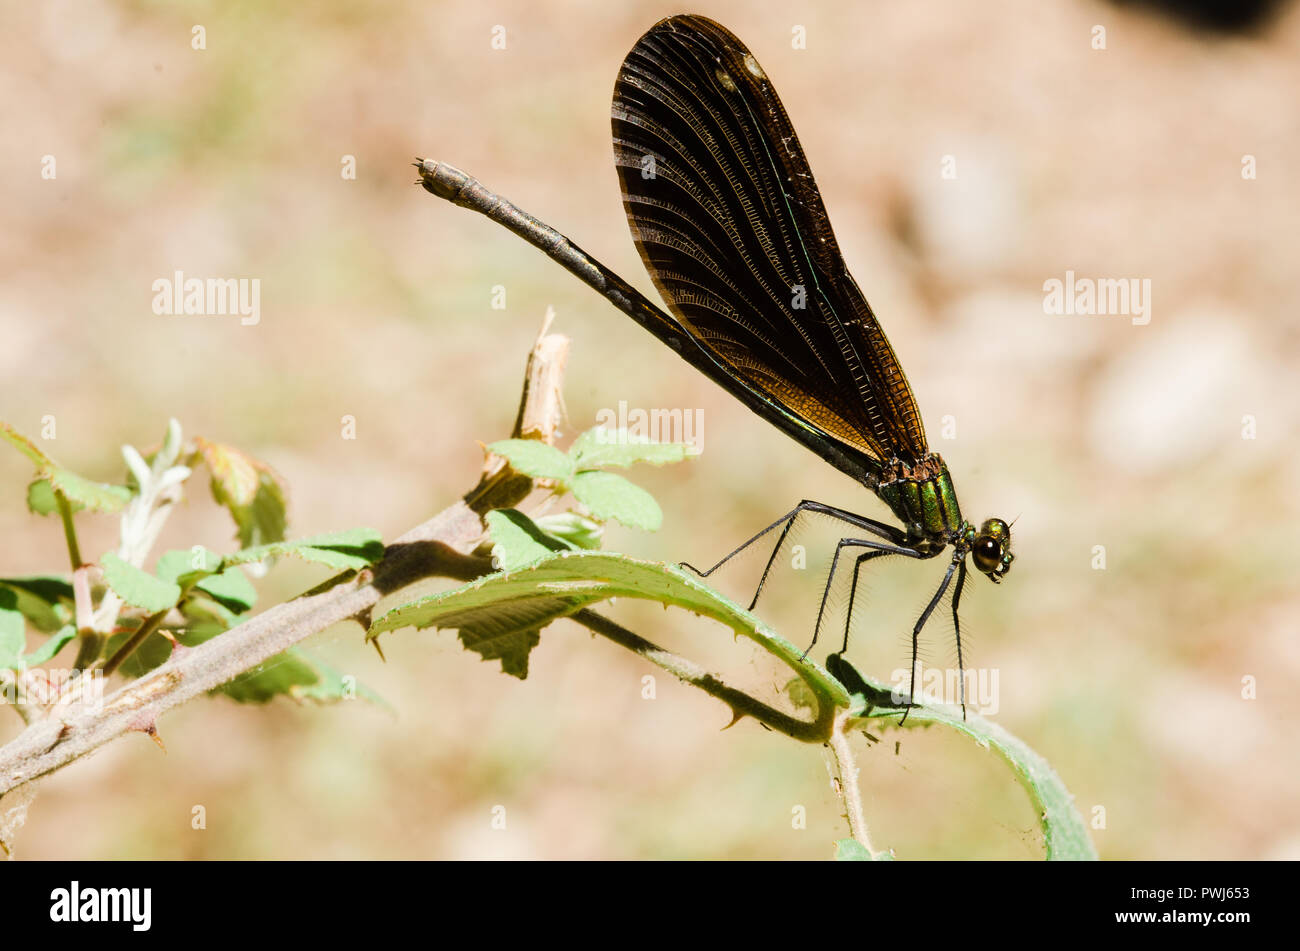 Libelle Fotografie, Schwarz Gelb, Grün, Blau und Rot, Dragonfly, Nahaufnahme, klaren Hintergrund und bokeh Pflanzen Stockfoto